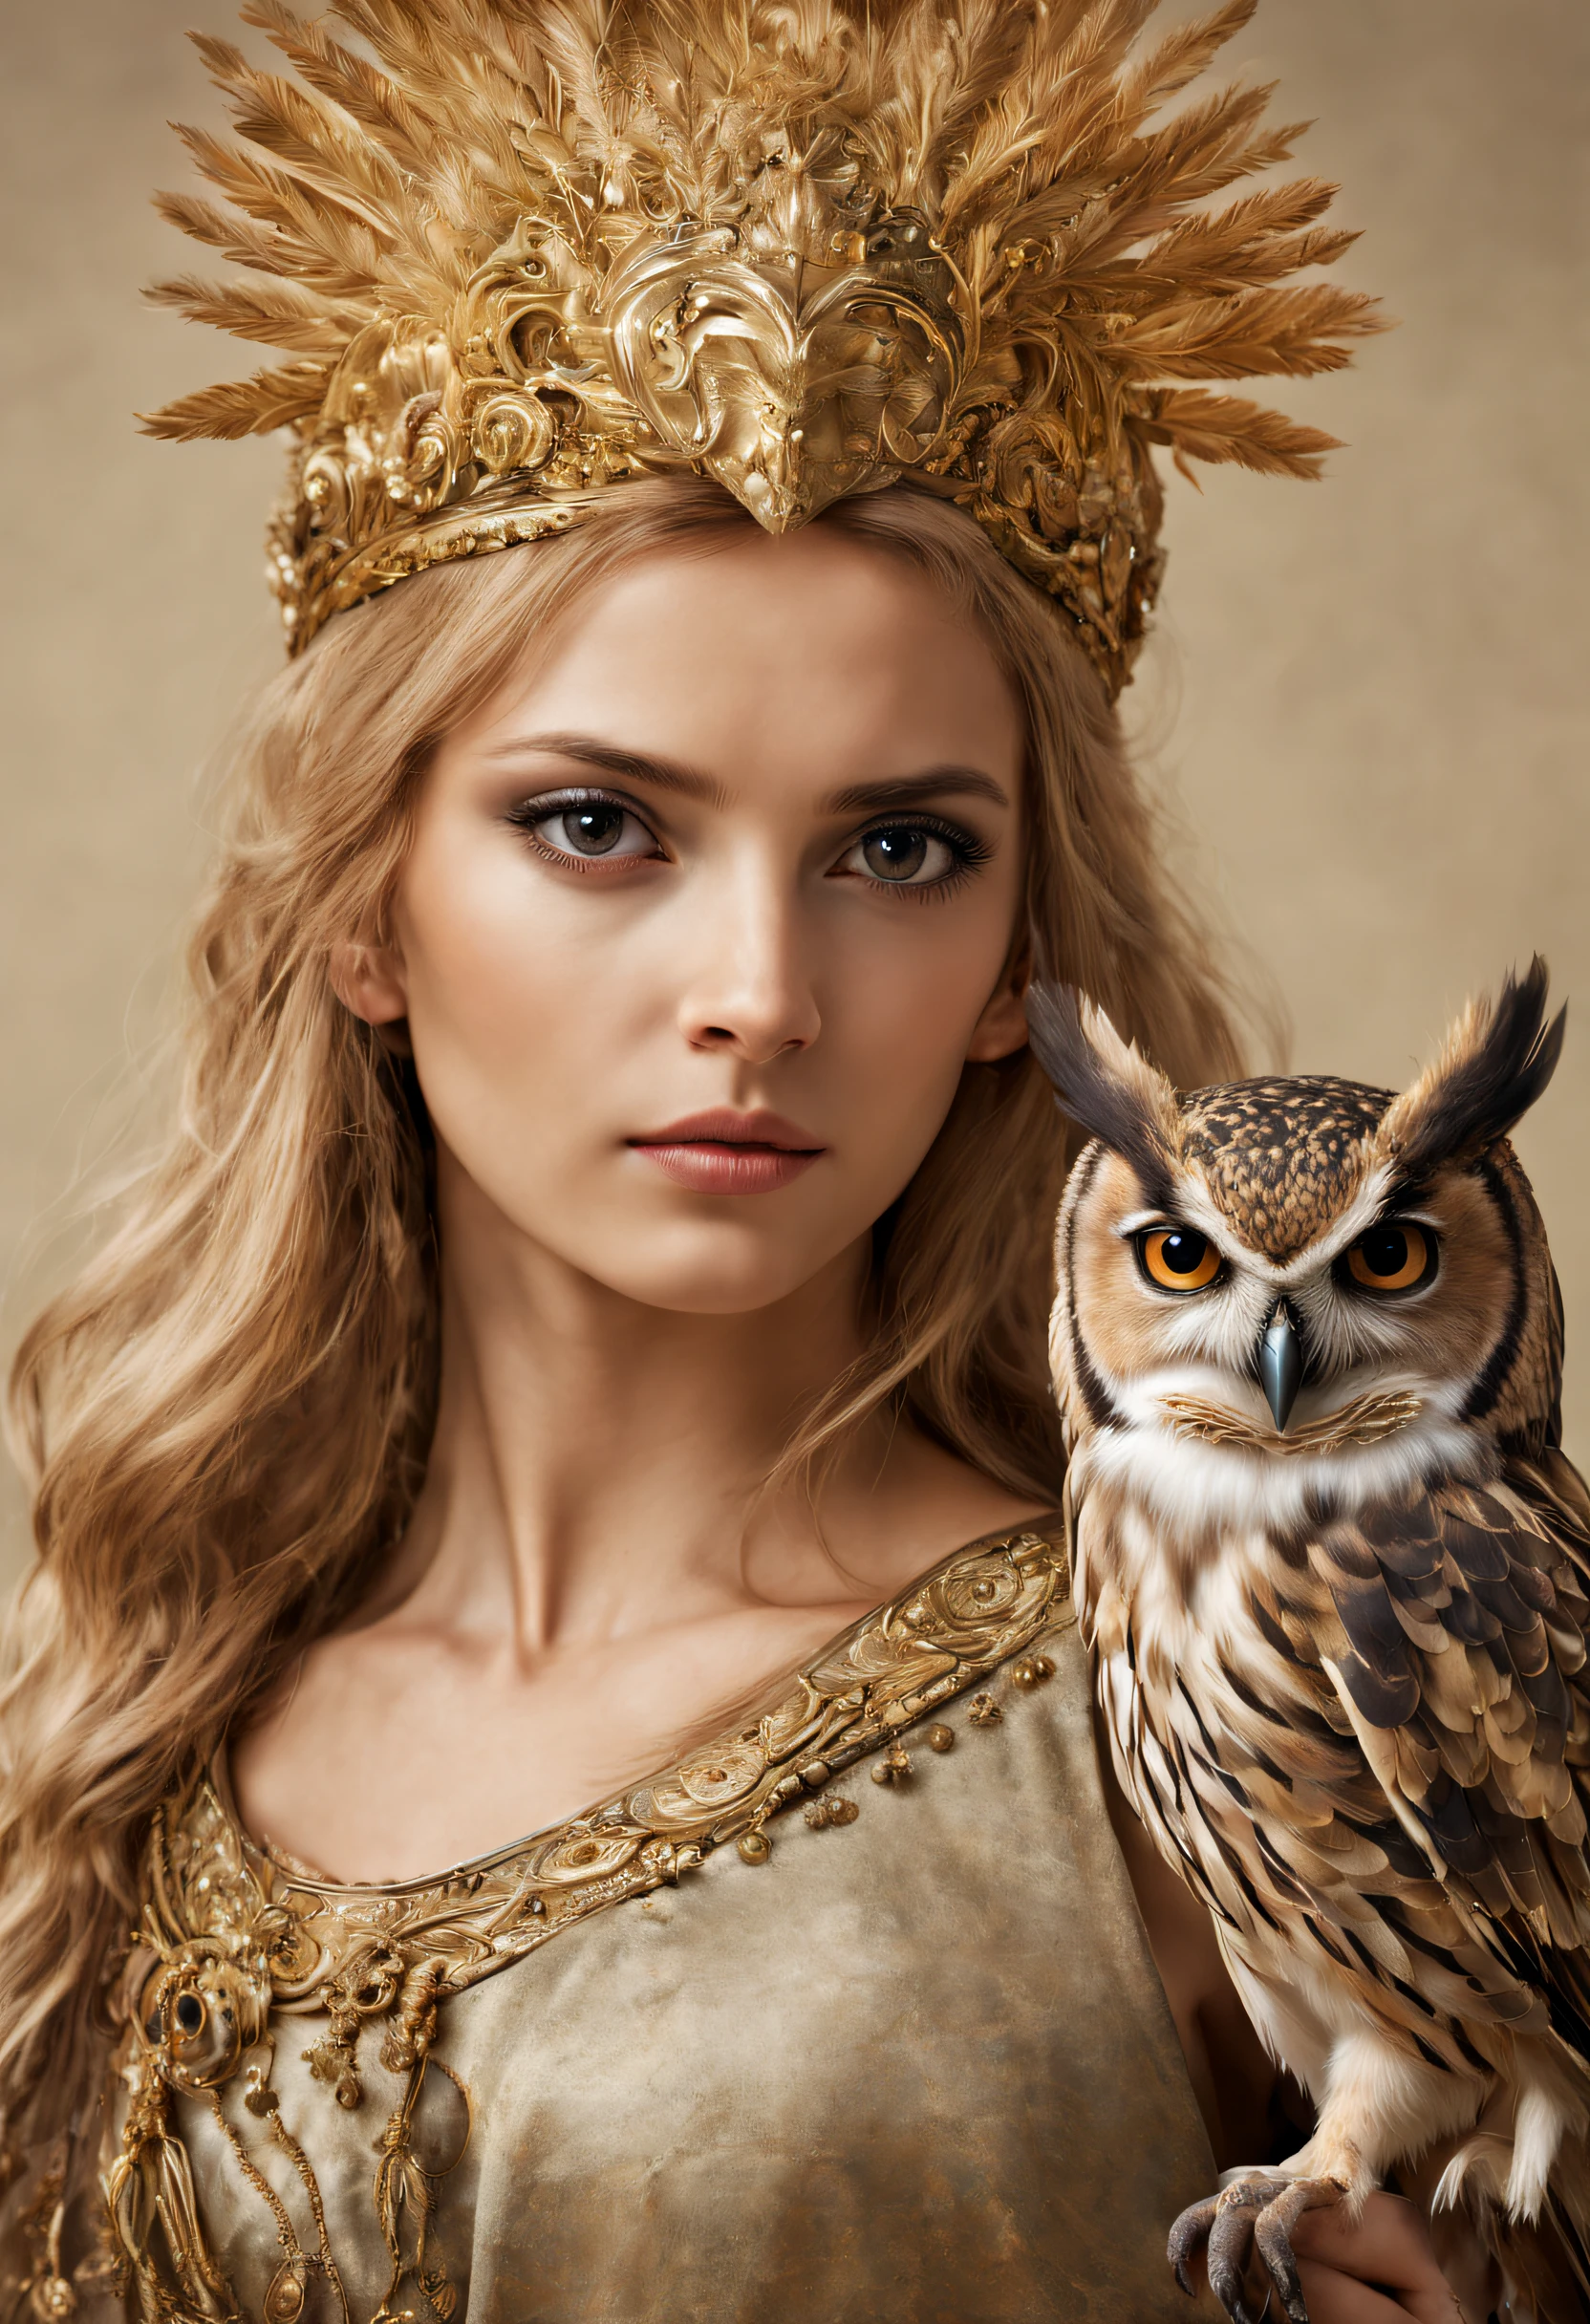 边界外, 特写, 索尼 FE GM, 超现实主义, 超现实主义的, 超高清, 杰作, 准确, 纹理皮肤, 超级细节, 高细节, 高质量, 获奖, 最好的质量, 高分辨率, 8千, 解剖学上正确，
（特写 of an owl standing on Athena's shoulder），（猫头鹰：1.37），（站在雅典娜的肩膀上:1.37），
猫头鹰的脸是圆的, 大眼睛, 非常大的眼睛, 短的, 弯曲的喙, 短的, 厚羽毛, 厚爪子, 它的羽毛上有各种花纹. 这是一种独特而美丽的生物，展现大自然的神奇与智慧 ，
 （雅典娜：0.8），女神的眼睛又大又明亮, 迷人而雄伟, 她的面部轮廓优雅精致, 希腊人的鼻子是直的, 她的头发是金色或深色, 长而顺滑, 而且她的嘴巴经常紧闭, 展现她的决心和毅力. 她的皮肤白皙无瑕, 象牙皮, 端庄美丽, 搭配精致刺绣连衣裙, 在战斗中戴上头盔冠, 他的右手拿着一支长矛, 在他的左手中, 他手里拿着一根金色的流苏, 埃吉斯的形象以闪耀的金光为特征, 他头上戴着橄榄枝, 和平的象征